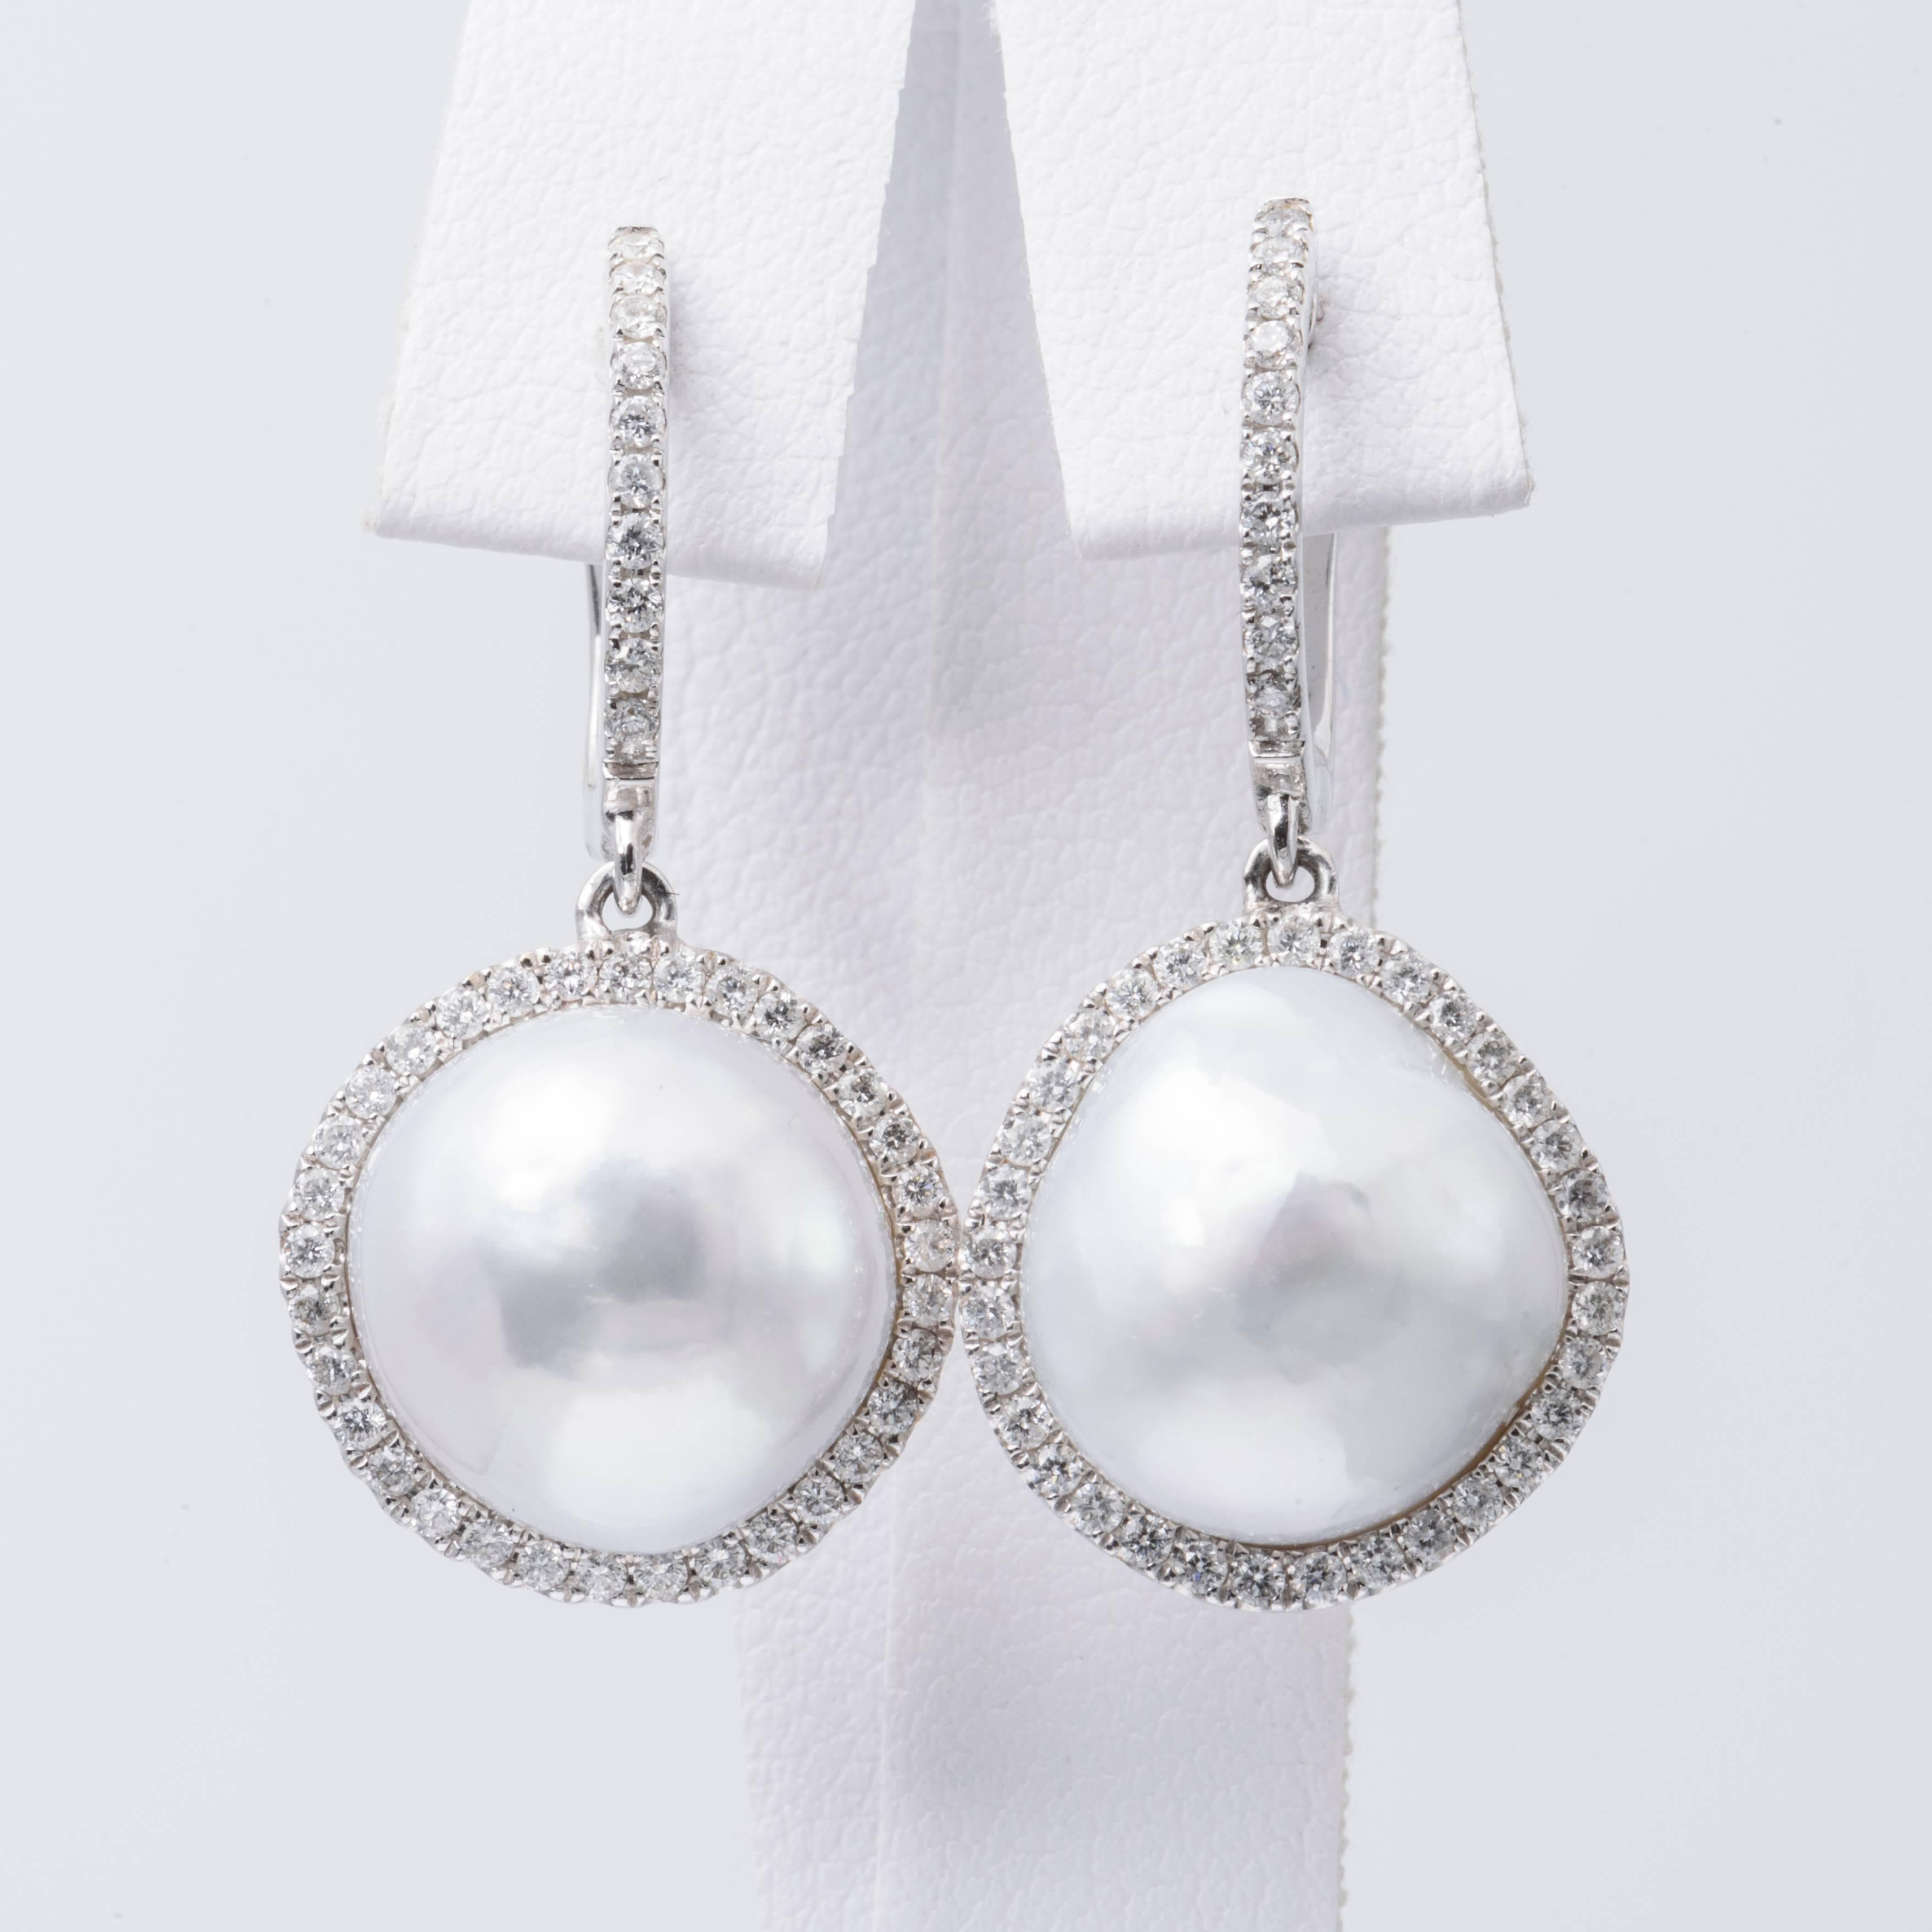 barocke Südseeperlen-Ohrringe aus 18 K Weißgold, 12-13 mm groß, flankiert von runden Brillanten mit einem Gewicht von 0,64 Karat. Perlen sind weiß mit silbernem Unterton

Passende Halskette ist erhältlich. 